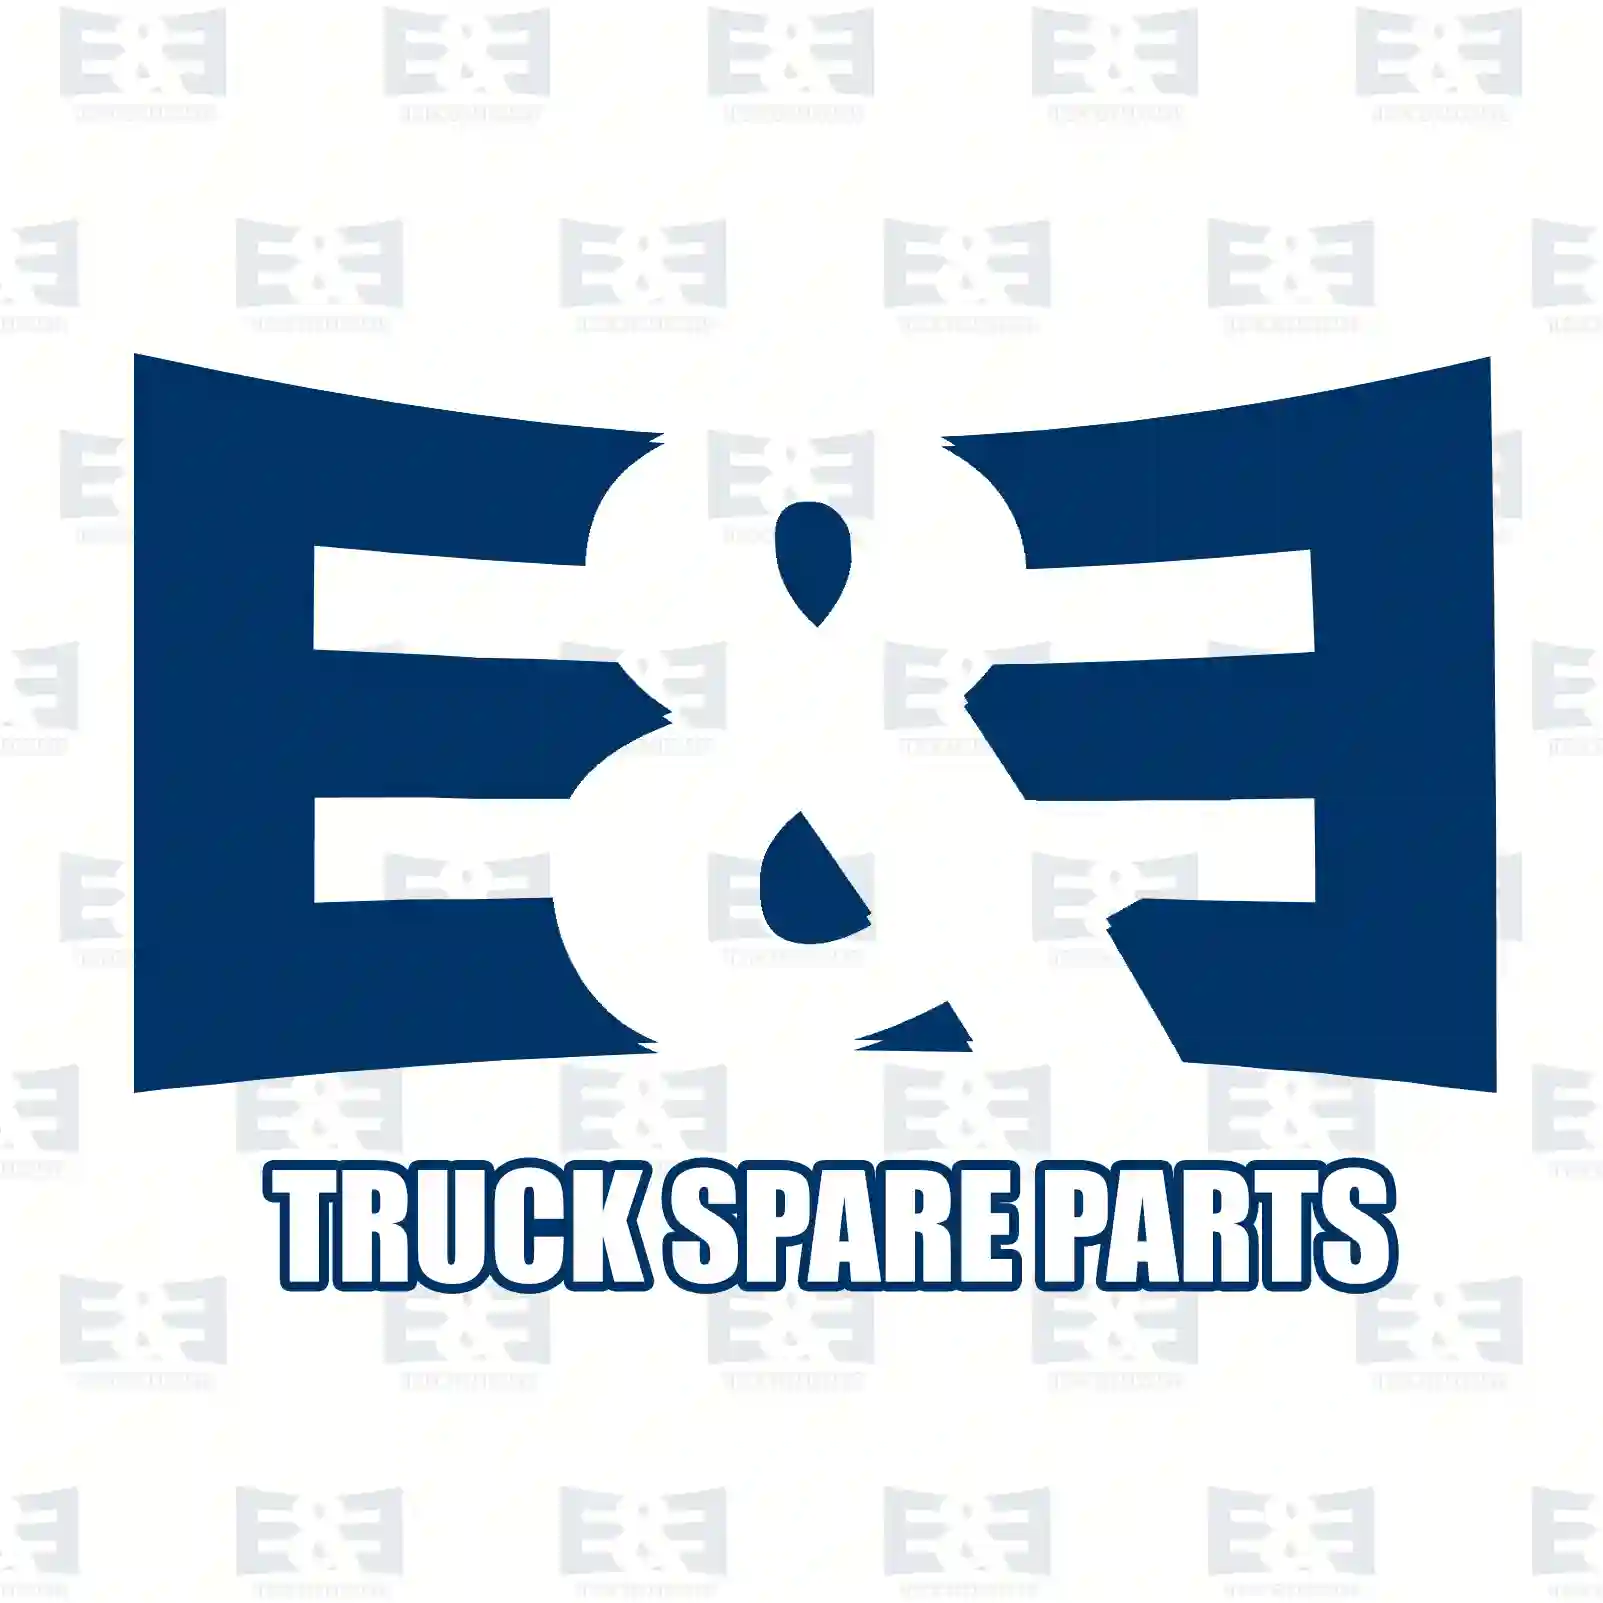 Step well case, right, 2E2292875, 81615100586, 81615100854, 81615100936 ||  2E2292875 E&E Truck Spare Parts | Truck Spare Parts, Auotomotive Spare Parts Step well case, right, 2E2292875, 81615100586, 81615100854, 81615100936 ||  2E2292875 E&E Truck Spare Parts | Truck Spare Parts, Auotomotive Spare Parts